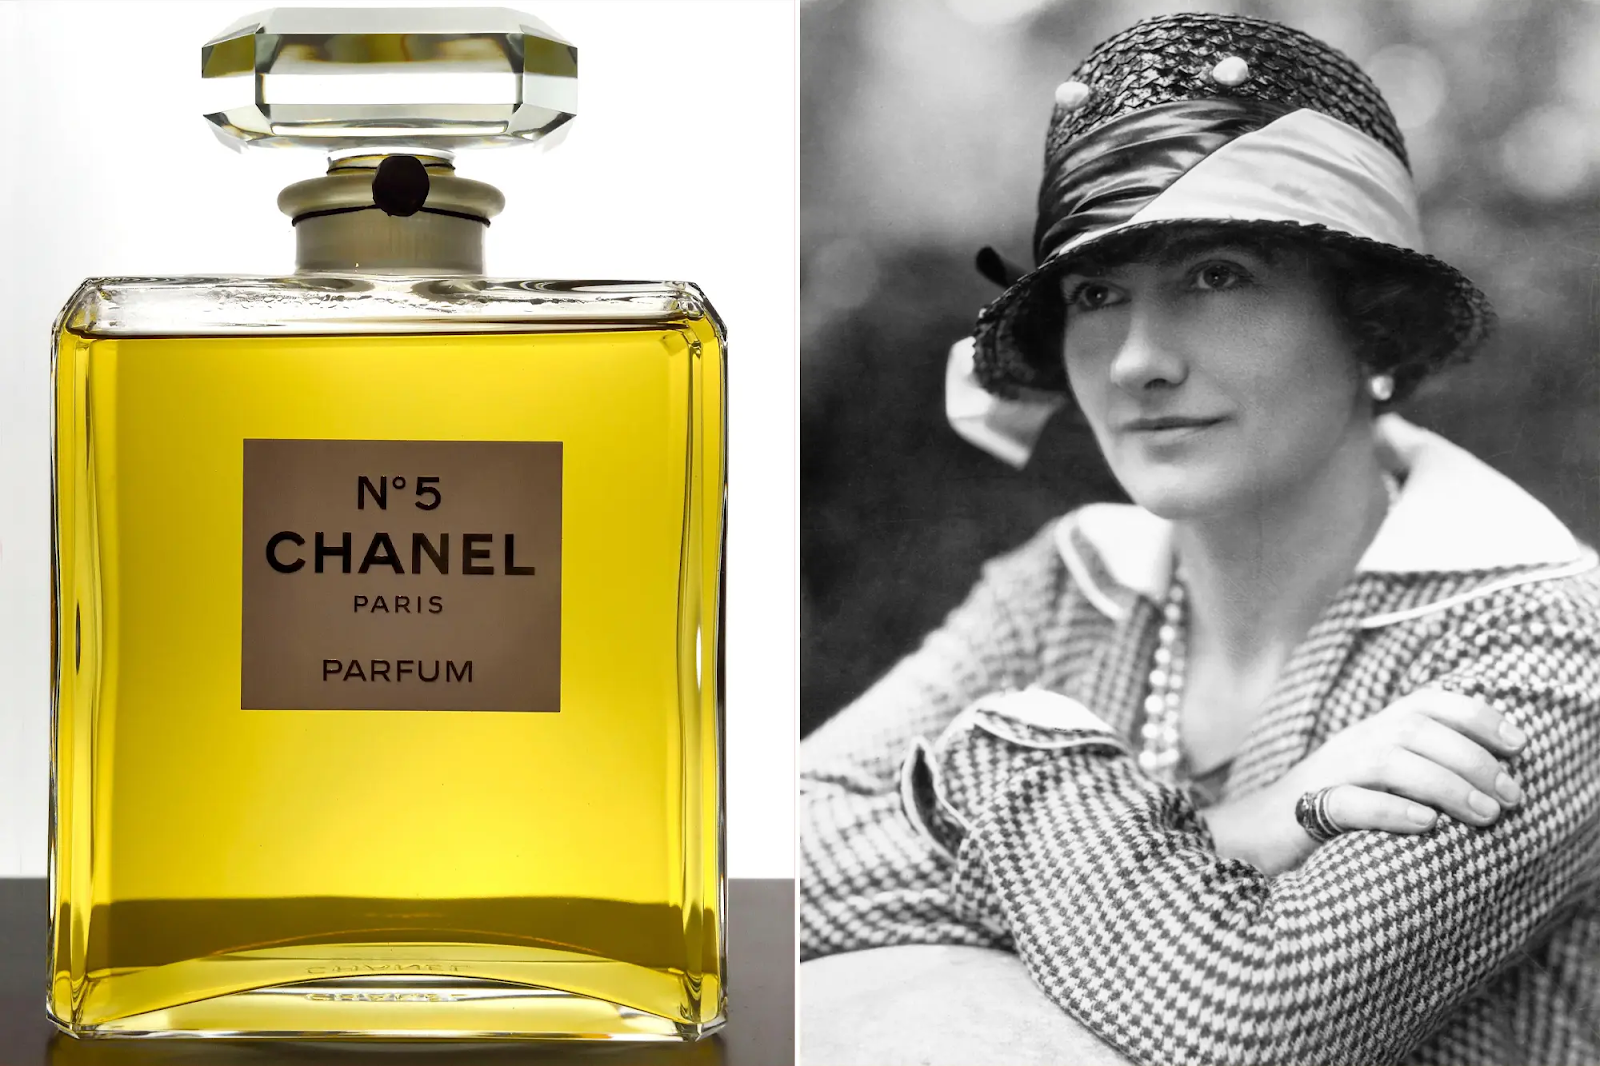 History Of Perfume Timelineไทม์ไลน์ความเป็นมาของน้ำหอมจากต้นกำเนิดน้ำหอมมันเดินทางมายังยุคปัจจุบันได้อย่างไร?24